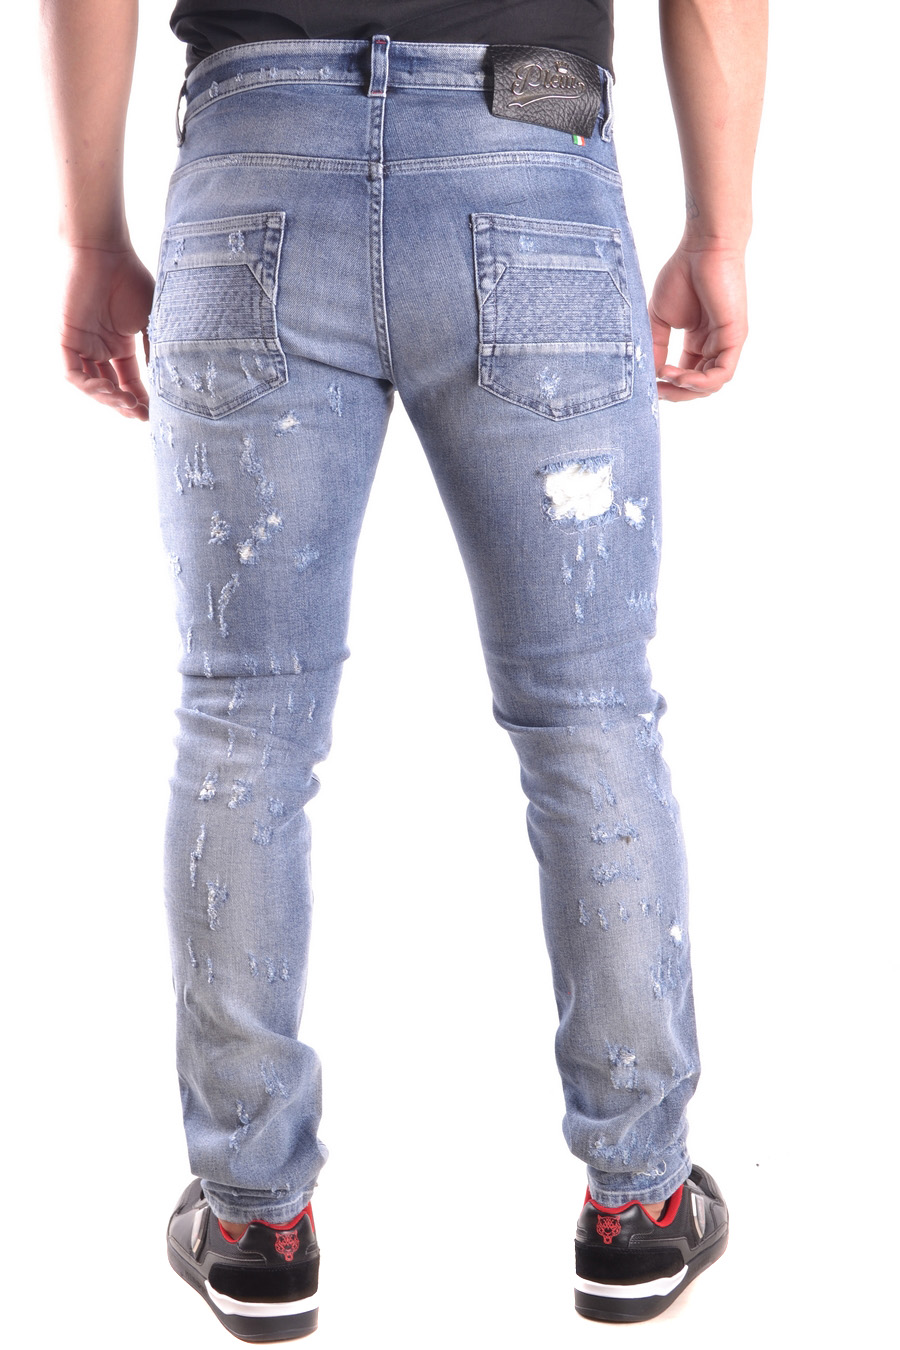 PHILIPP PLEIN Jeans | ViganoBoutique.com